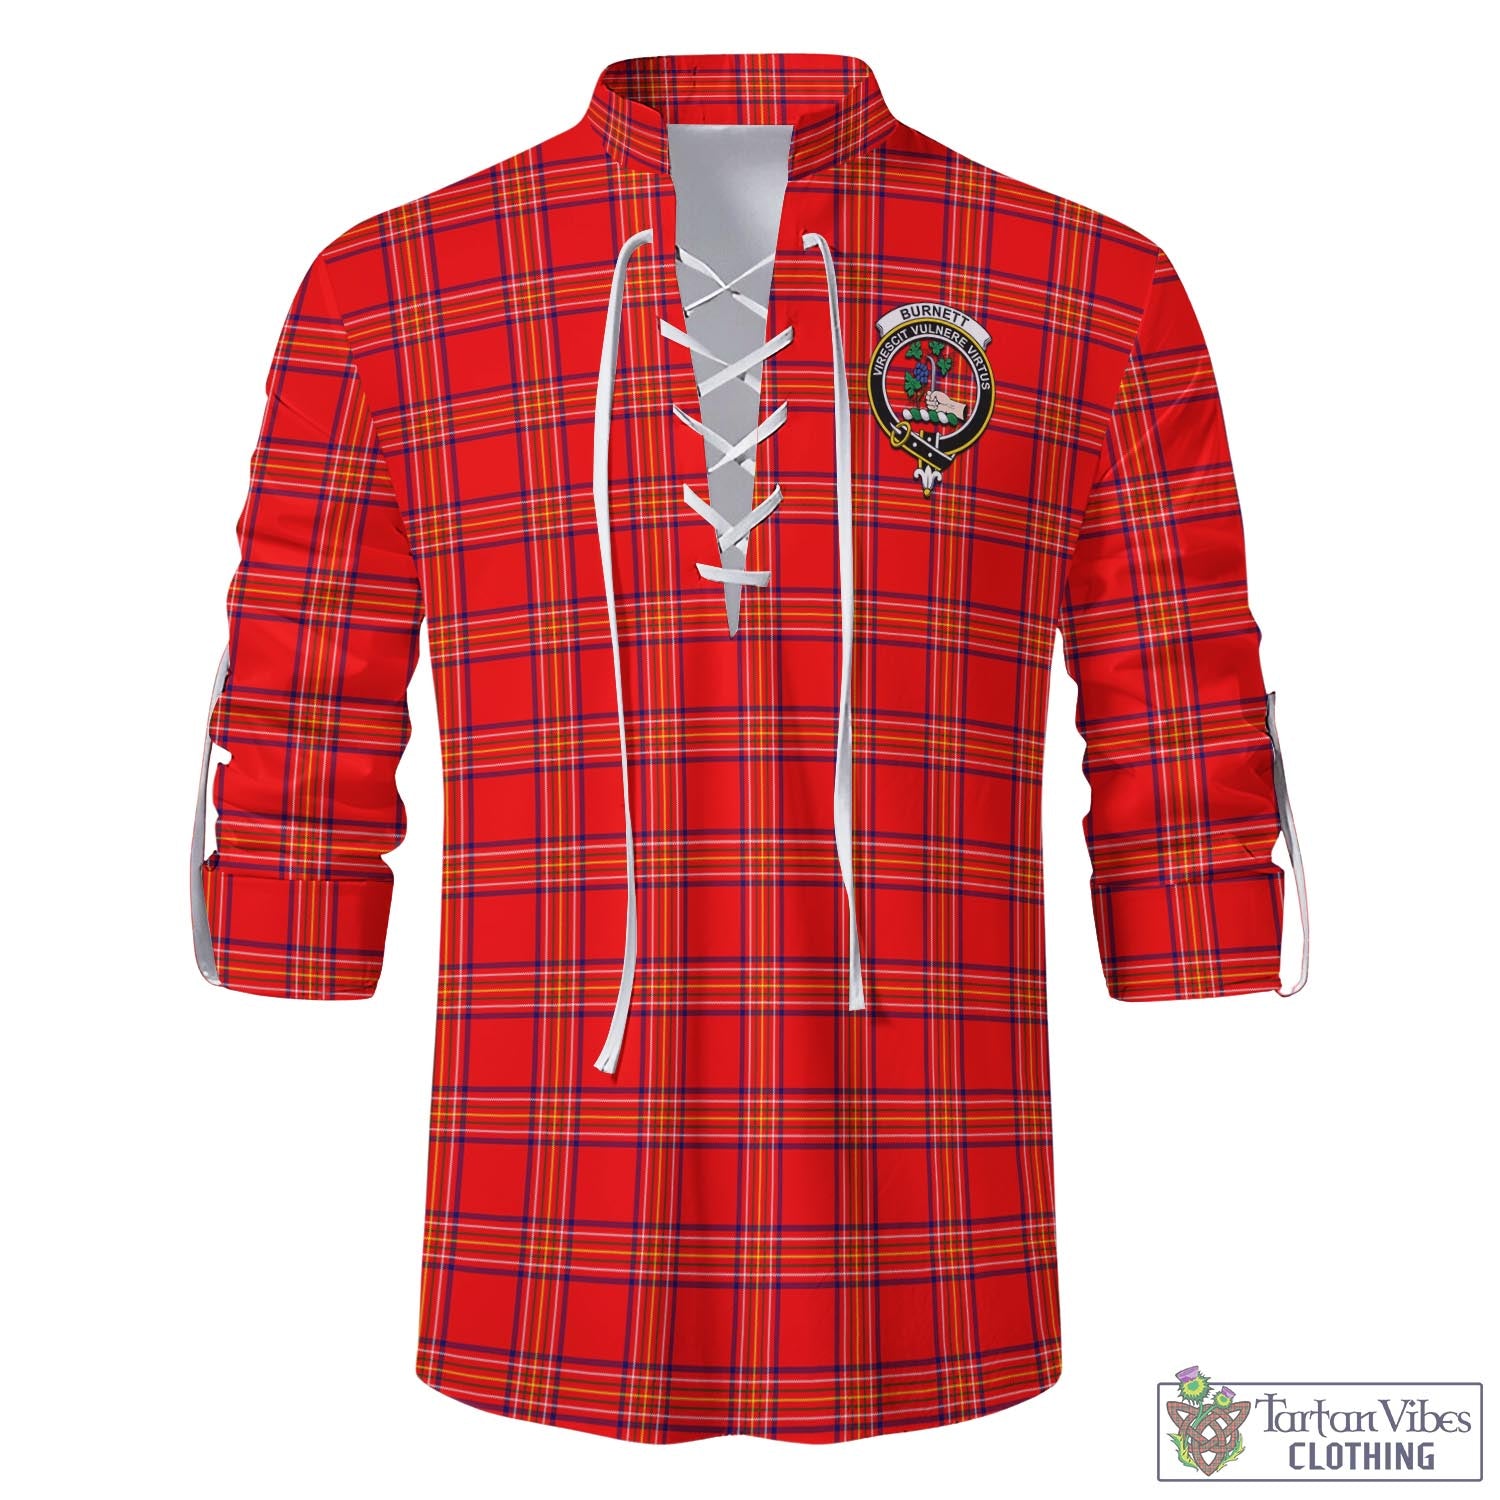 Tartan Vibes Clothing Burnett Modern Tartan Men's Scottish Traditional Jacobite Ghillie Kilt Shirt with Family Crest